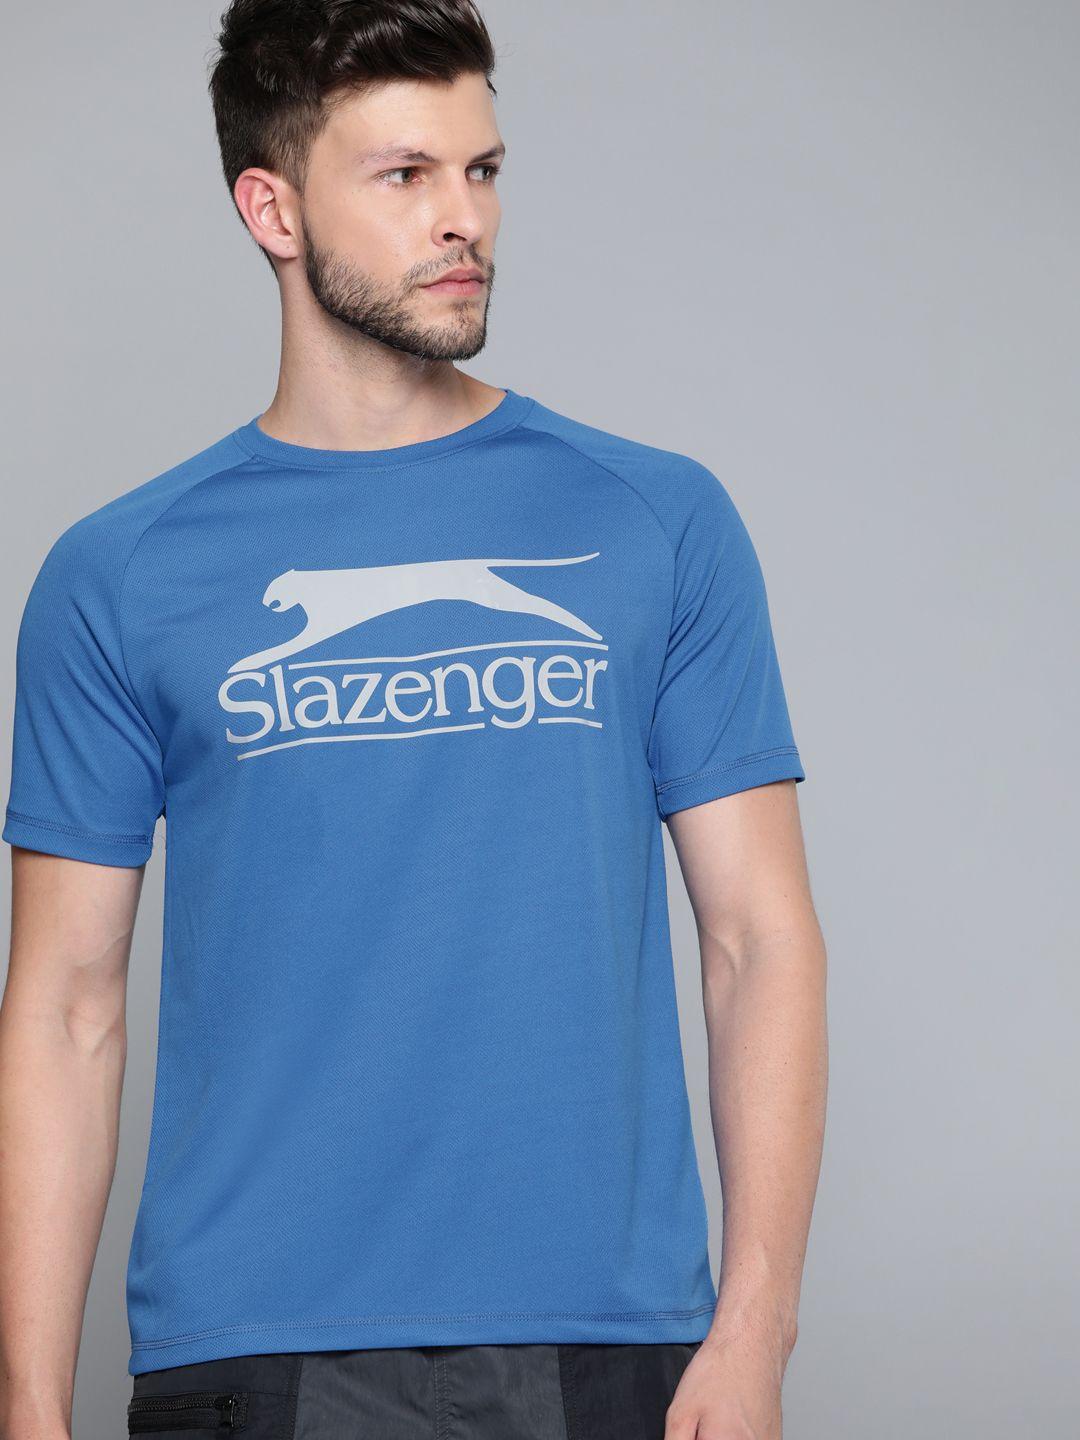 slazenger men blue & grey brand logo printed ultra-dry technology t-shirt